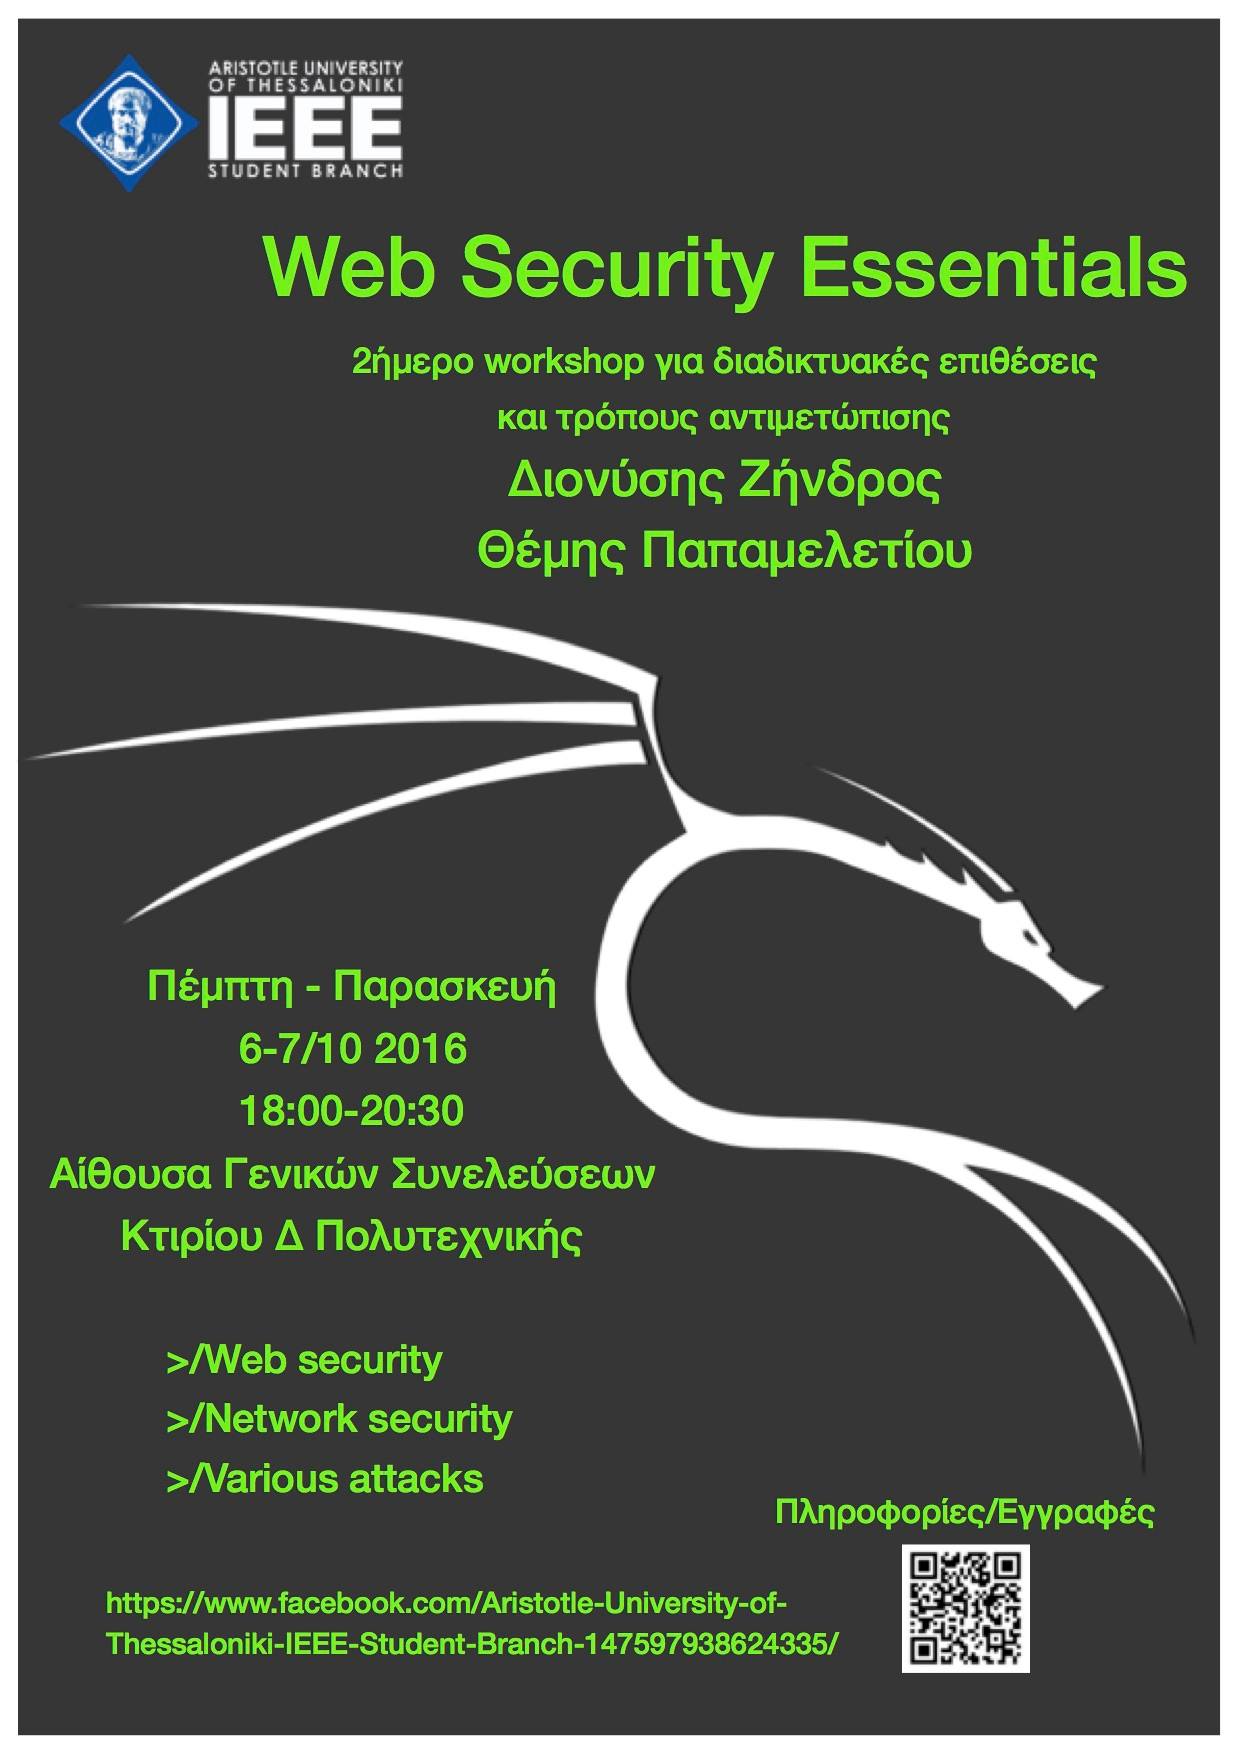 IEEE Web Security Essentials